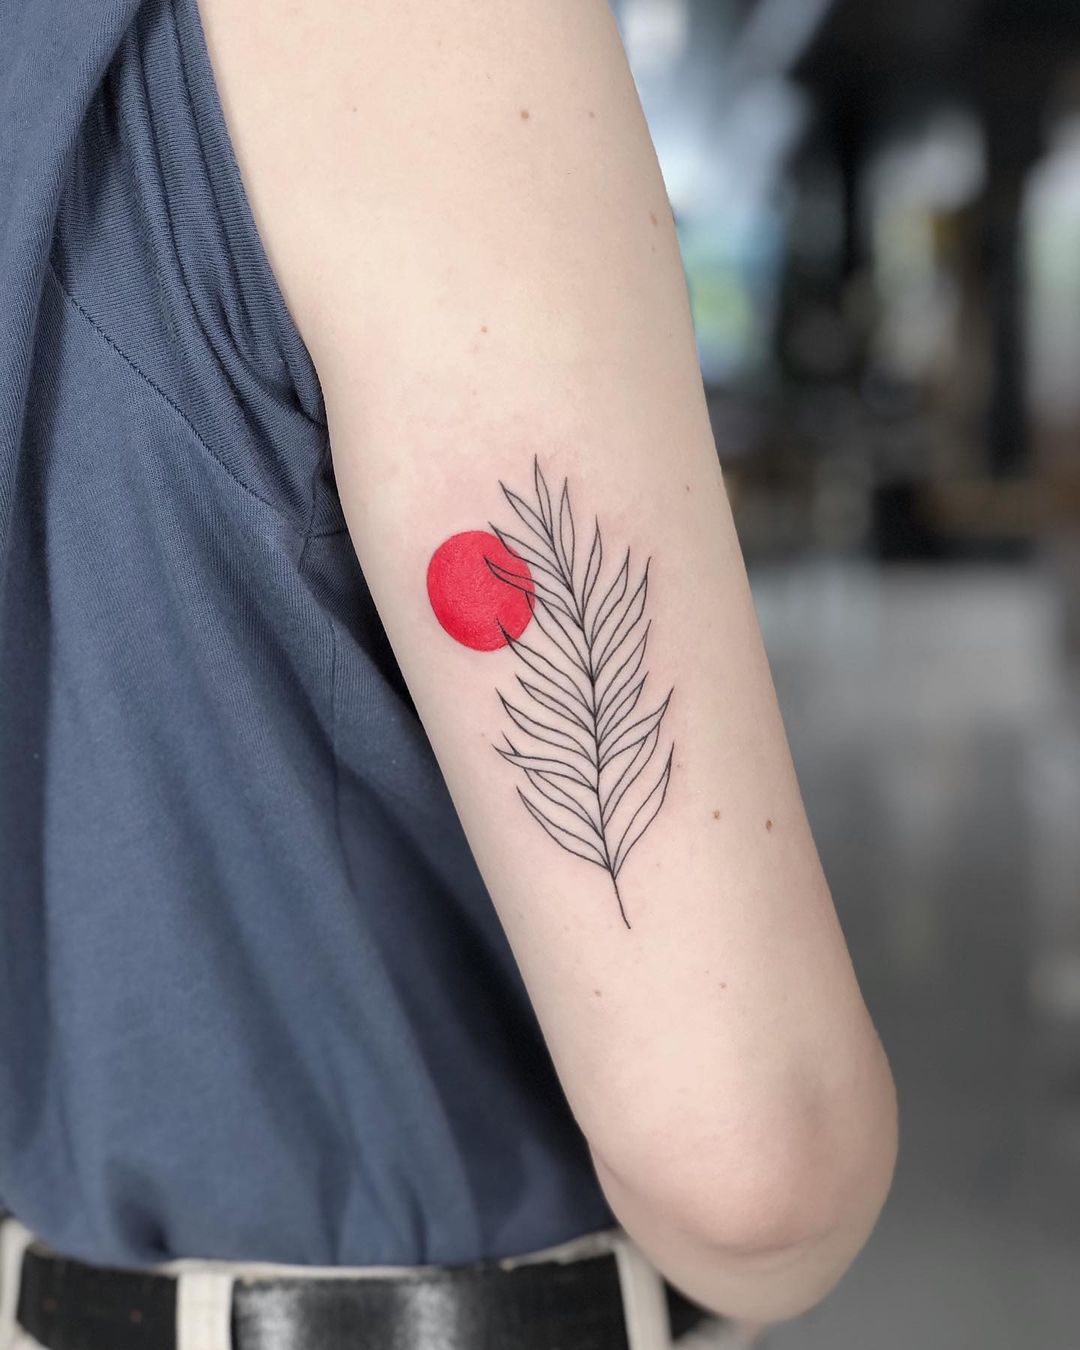 tattoo minimalist ideas